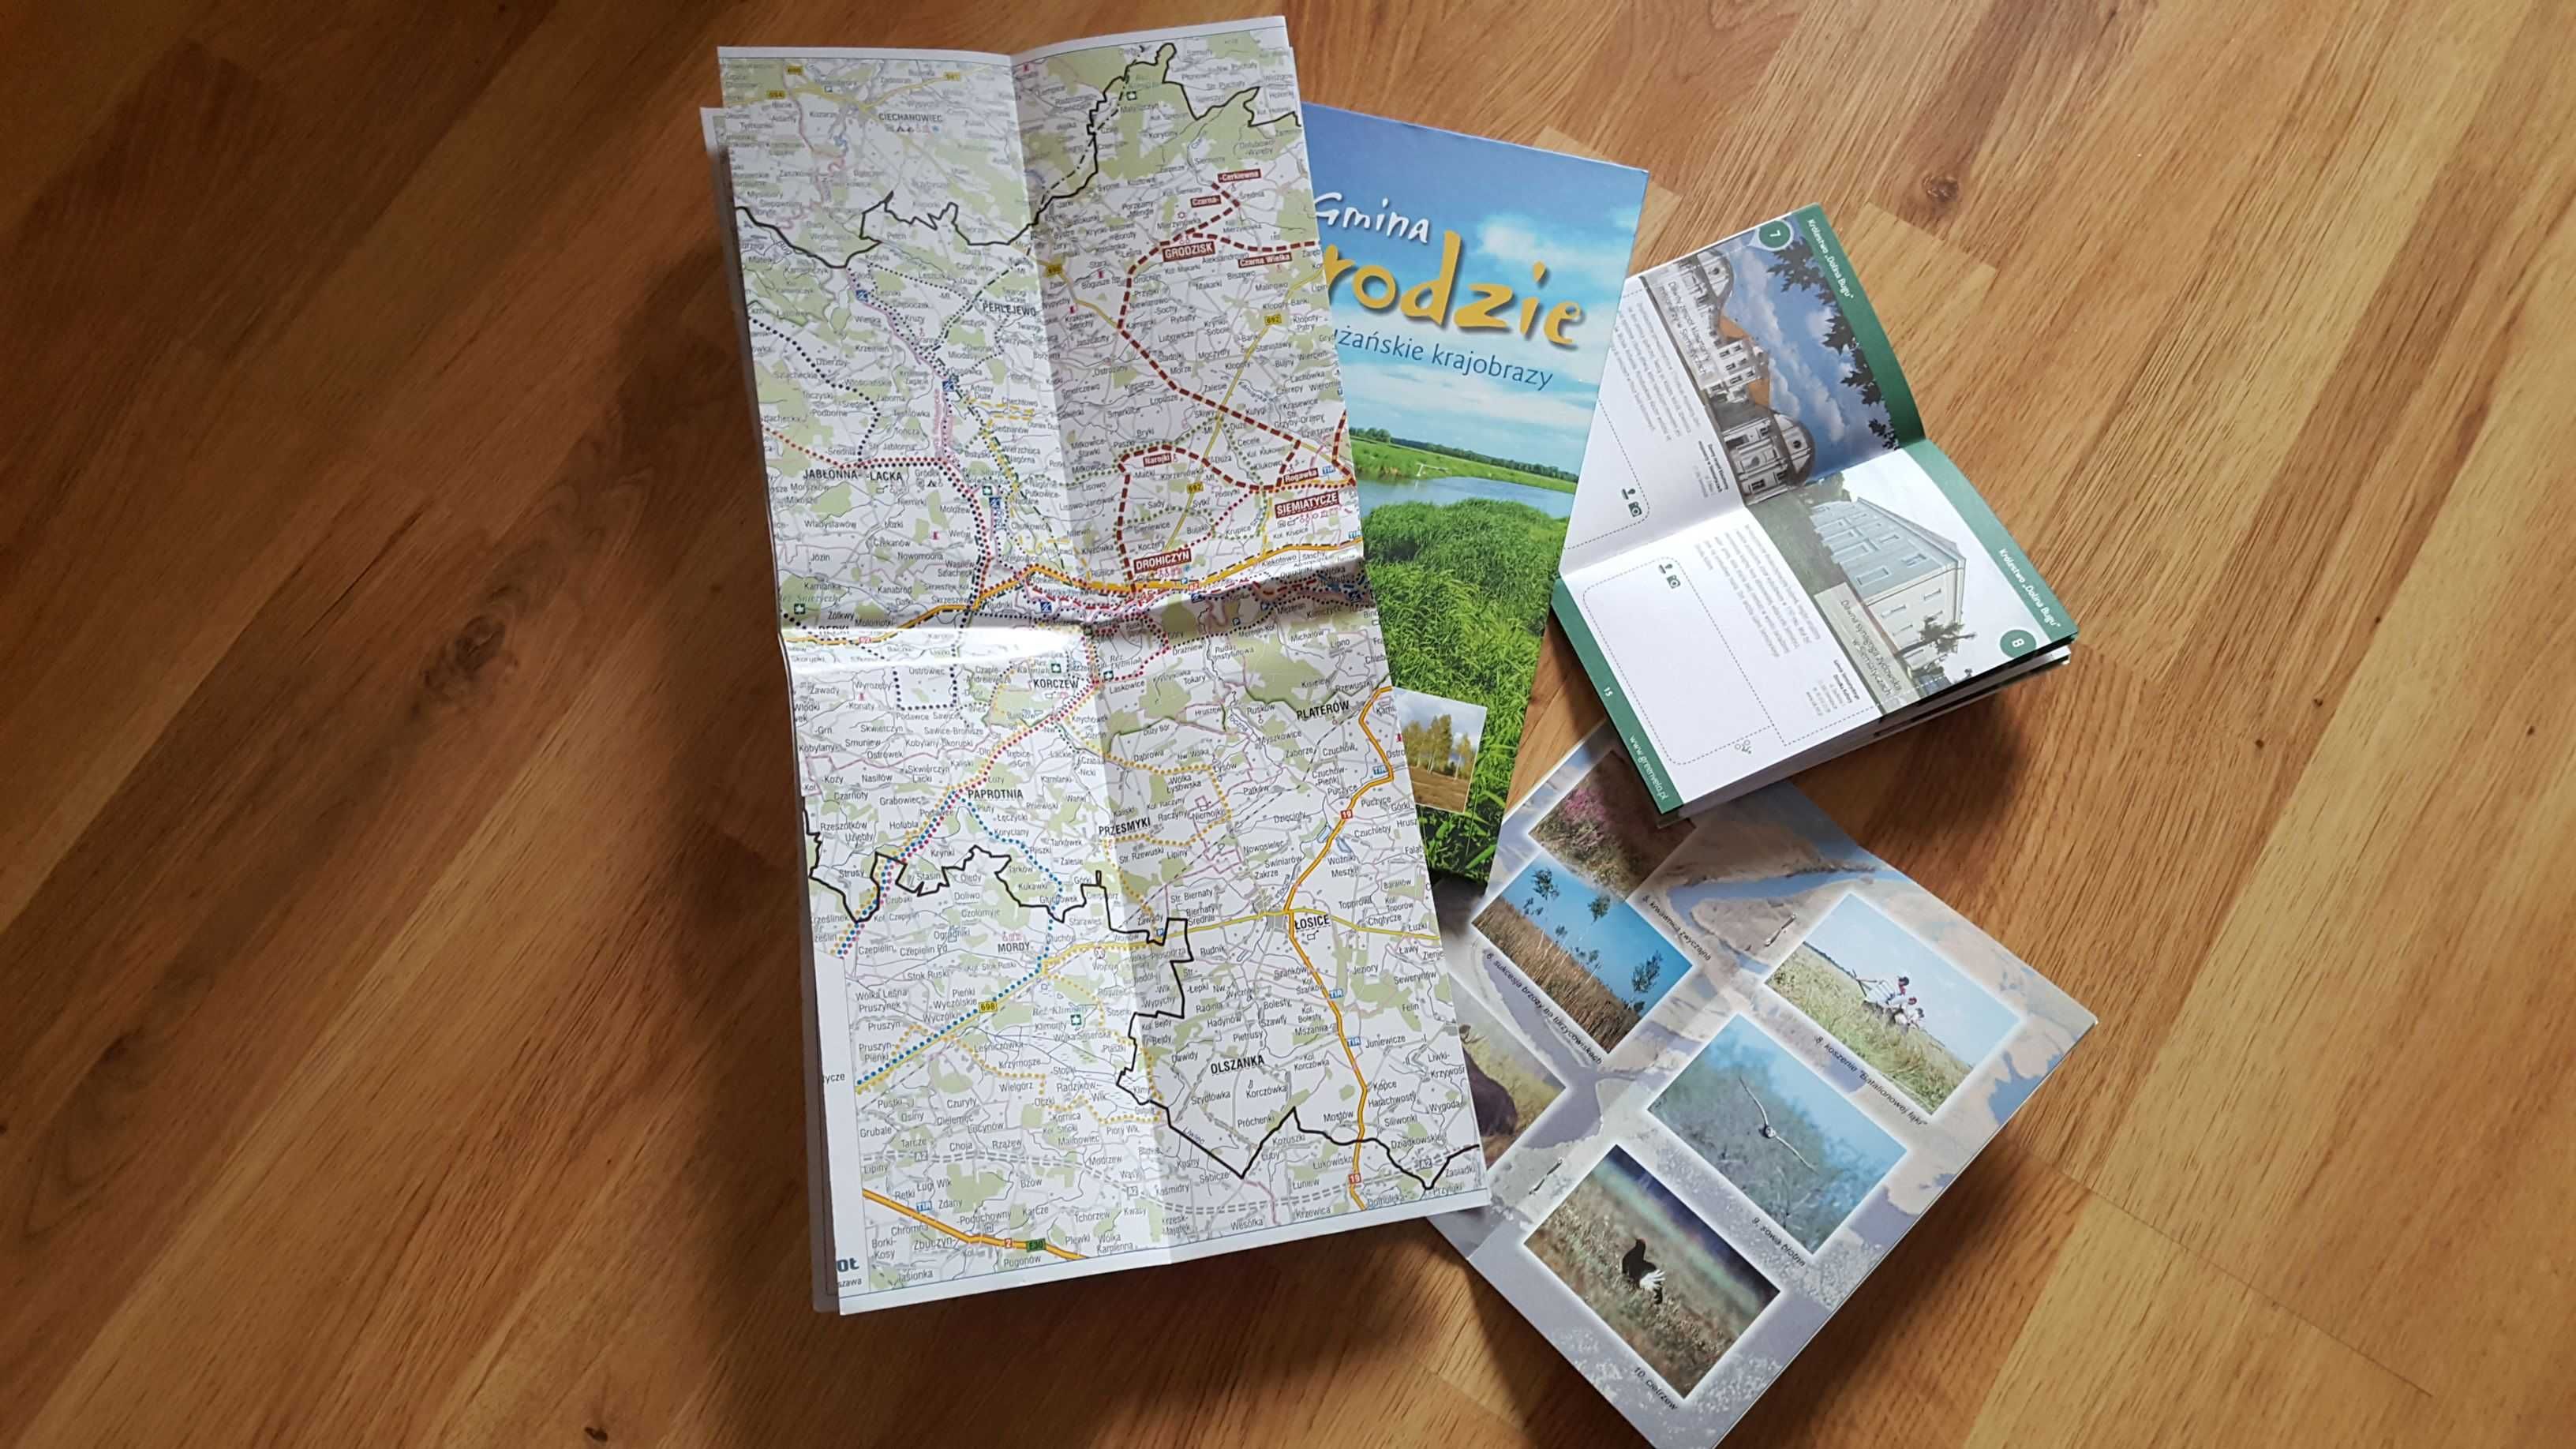 Album oraz broszury info mapy Nadbużańskie krajobrazy widoki znad Buga